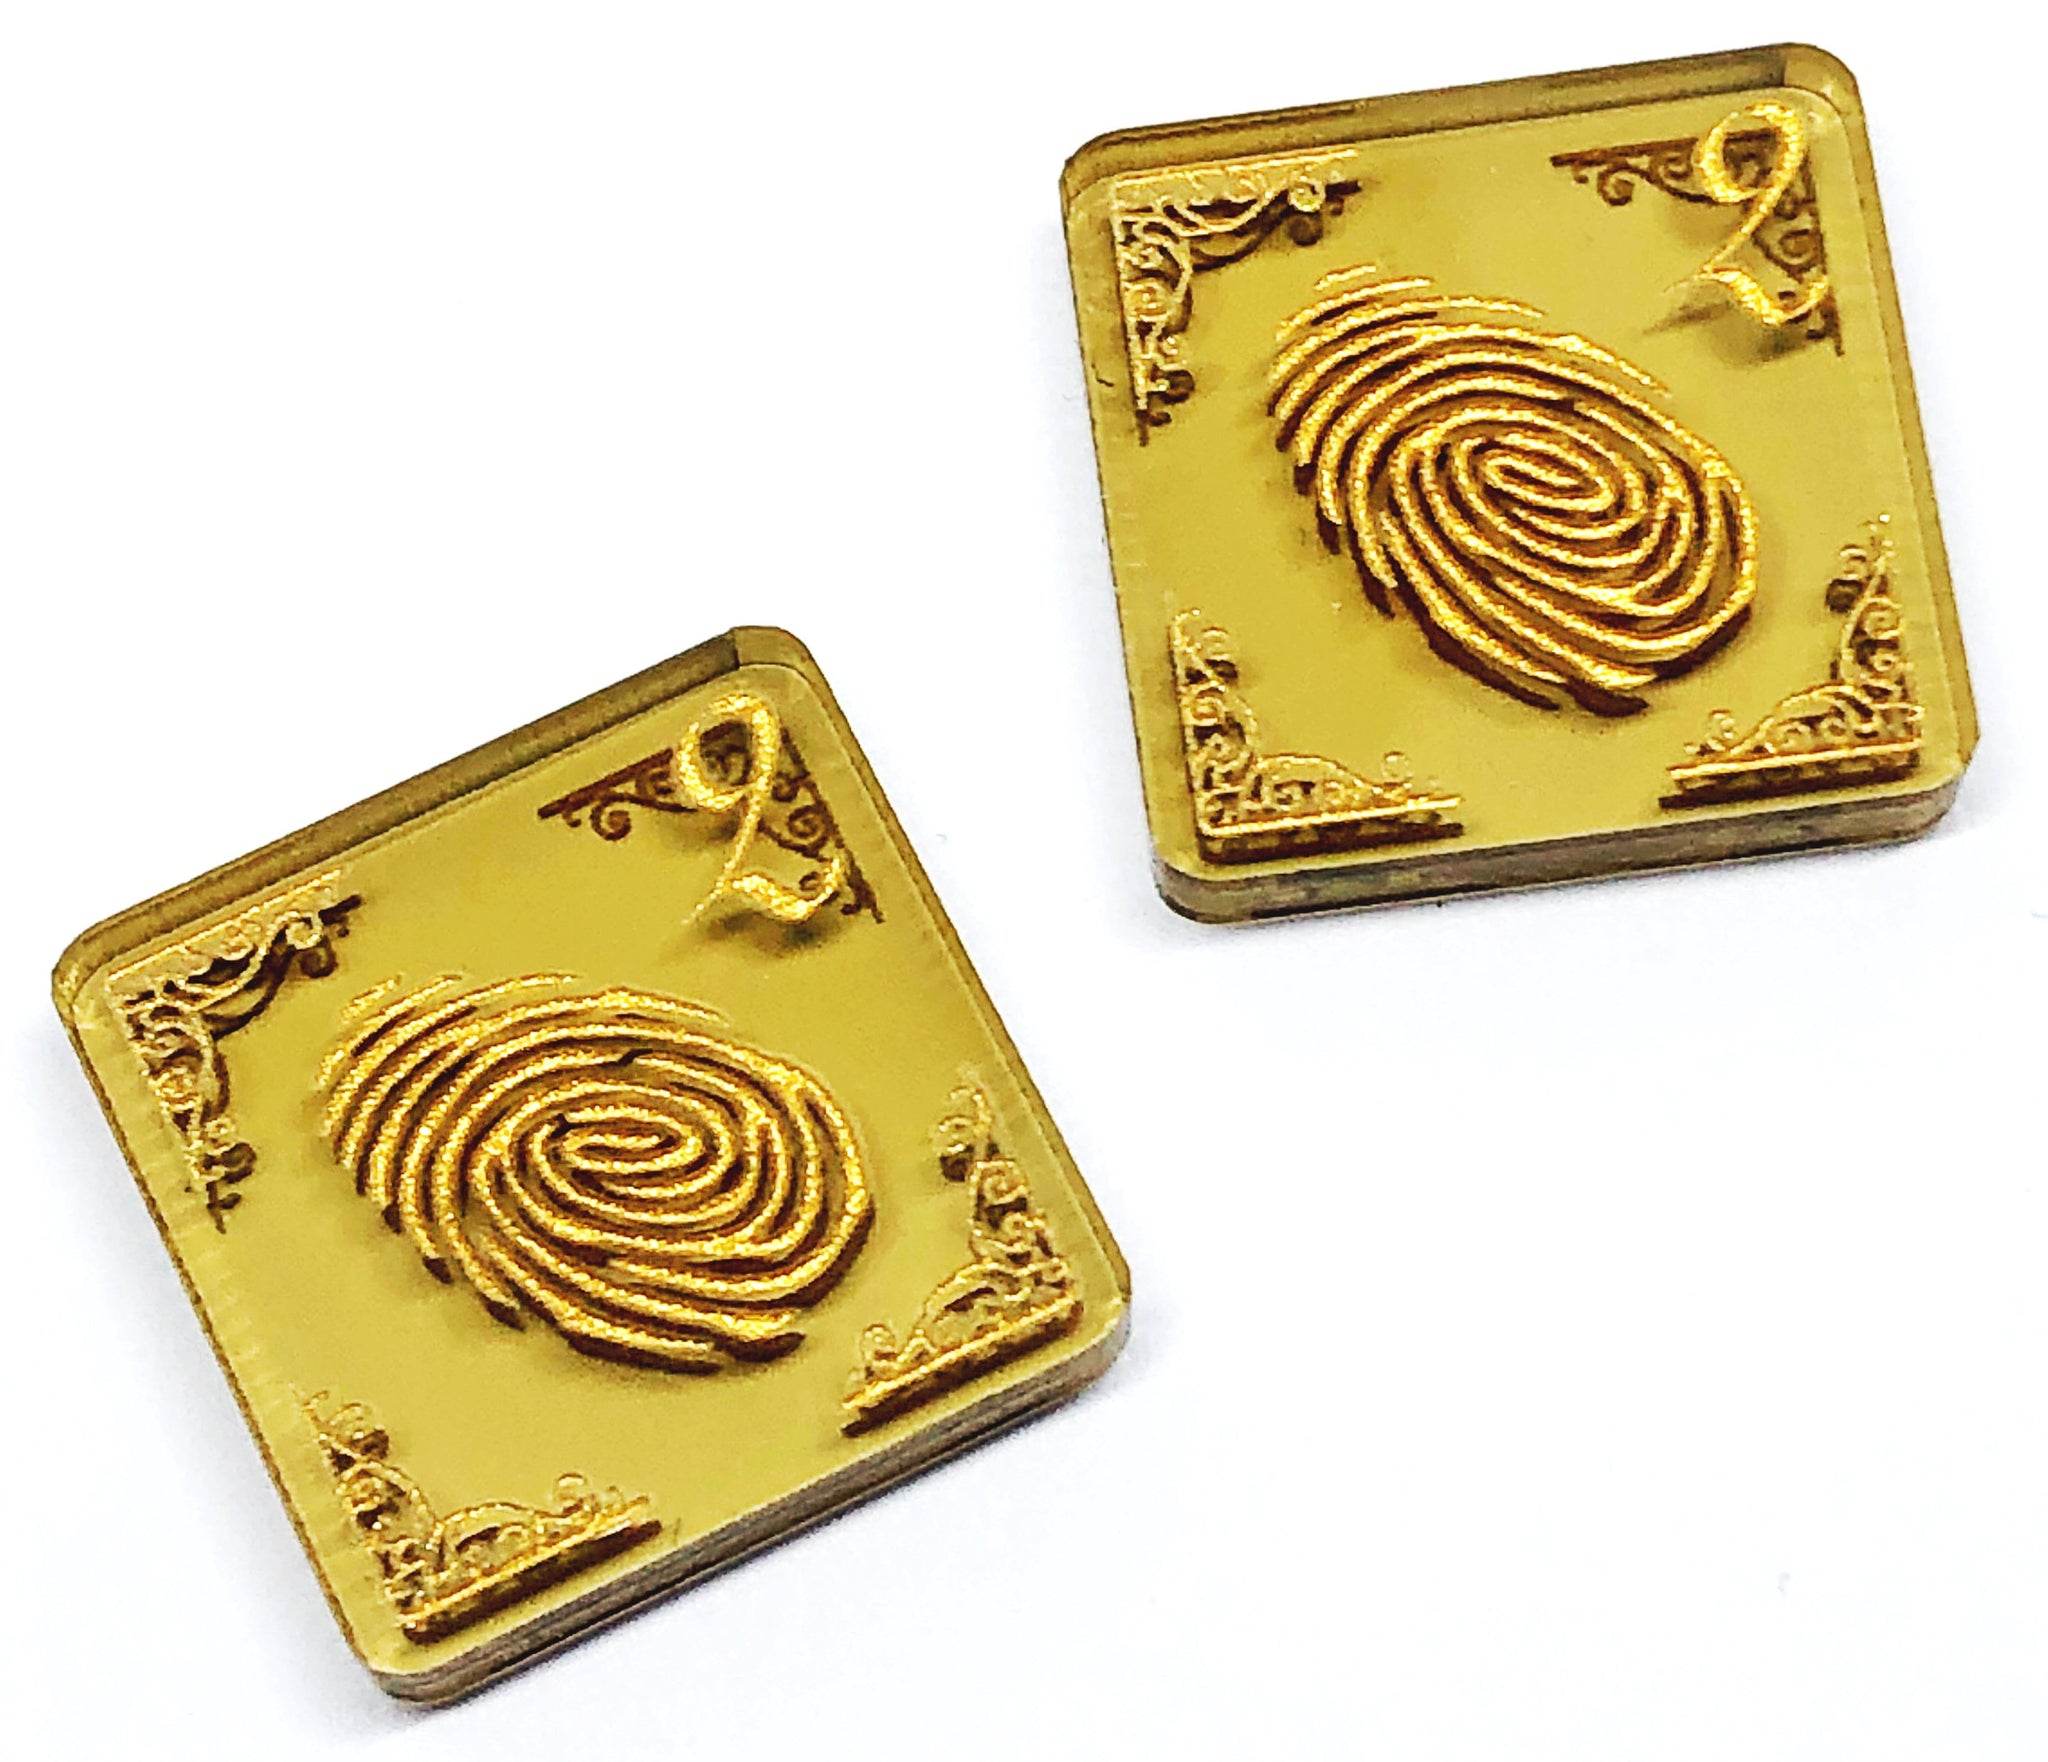 2 x Fingerprint tokens (double sided) for Arkham Horror LCG